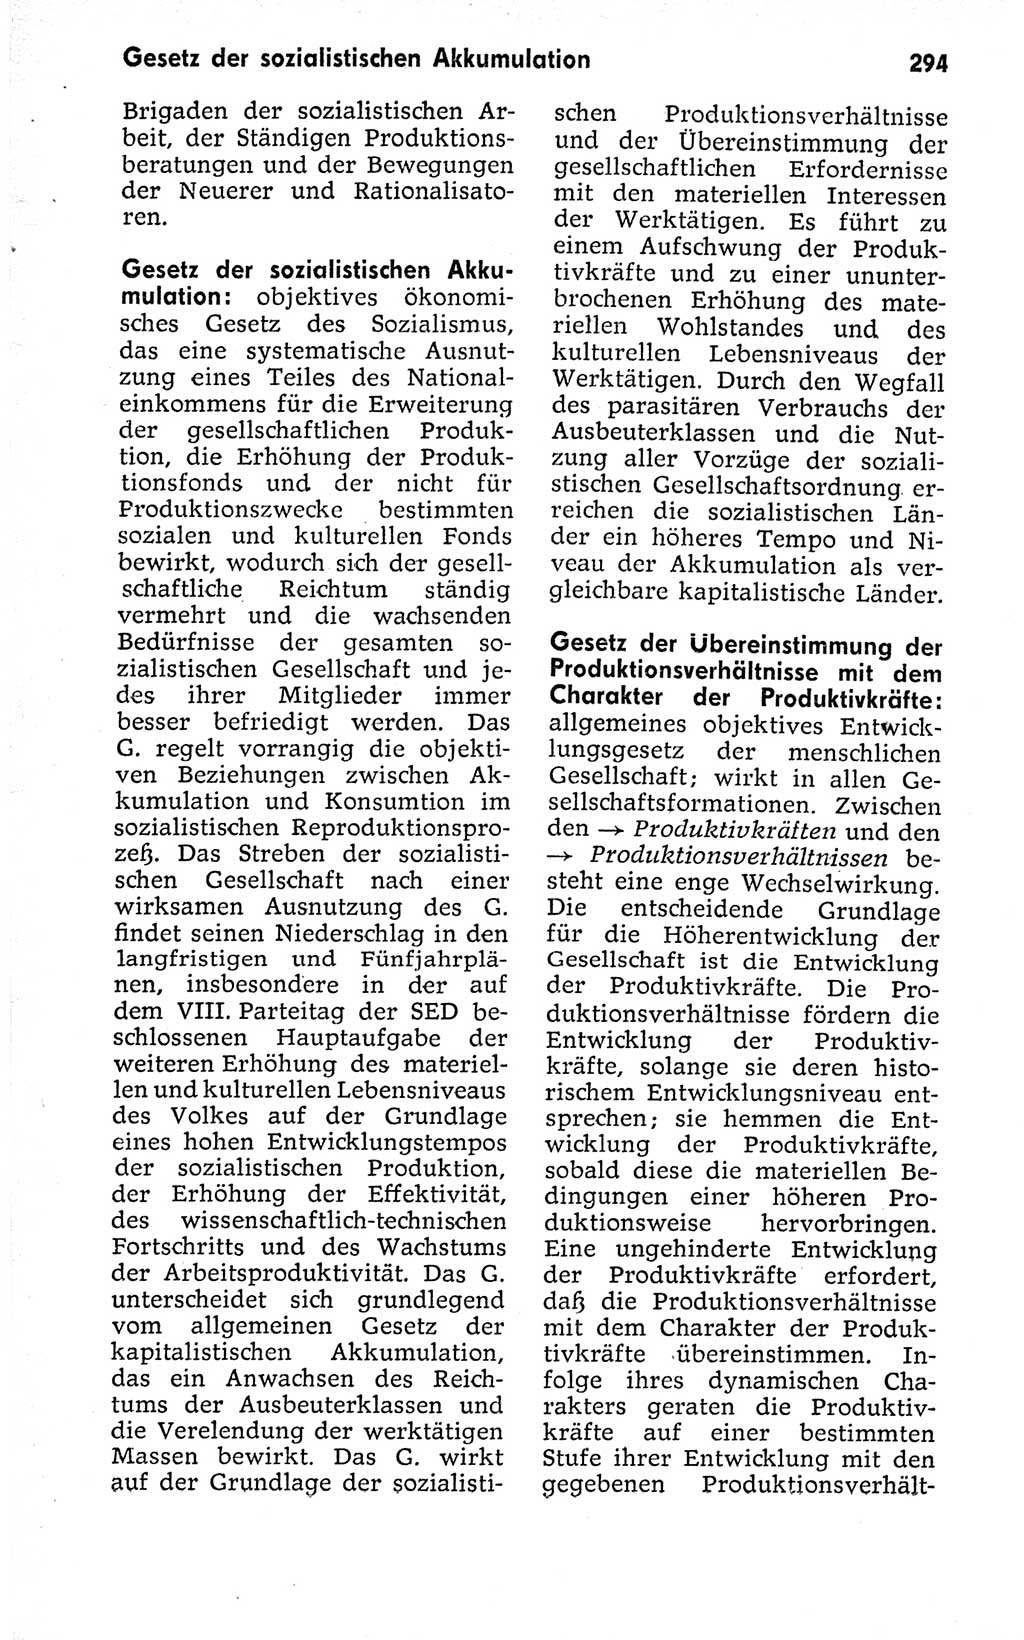 Kleines politisches Wörterbuch [Deutsche Demokratische Republik (DDR)] 1973, Seite 294 (Kl. pol. Wb. DDR 1973, S. 294)